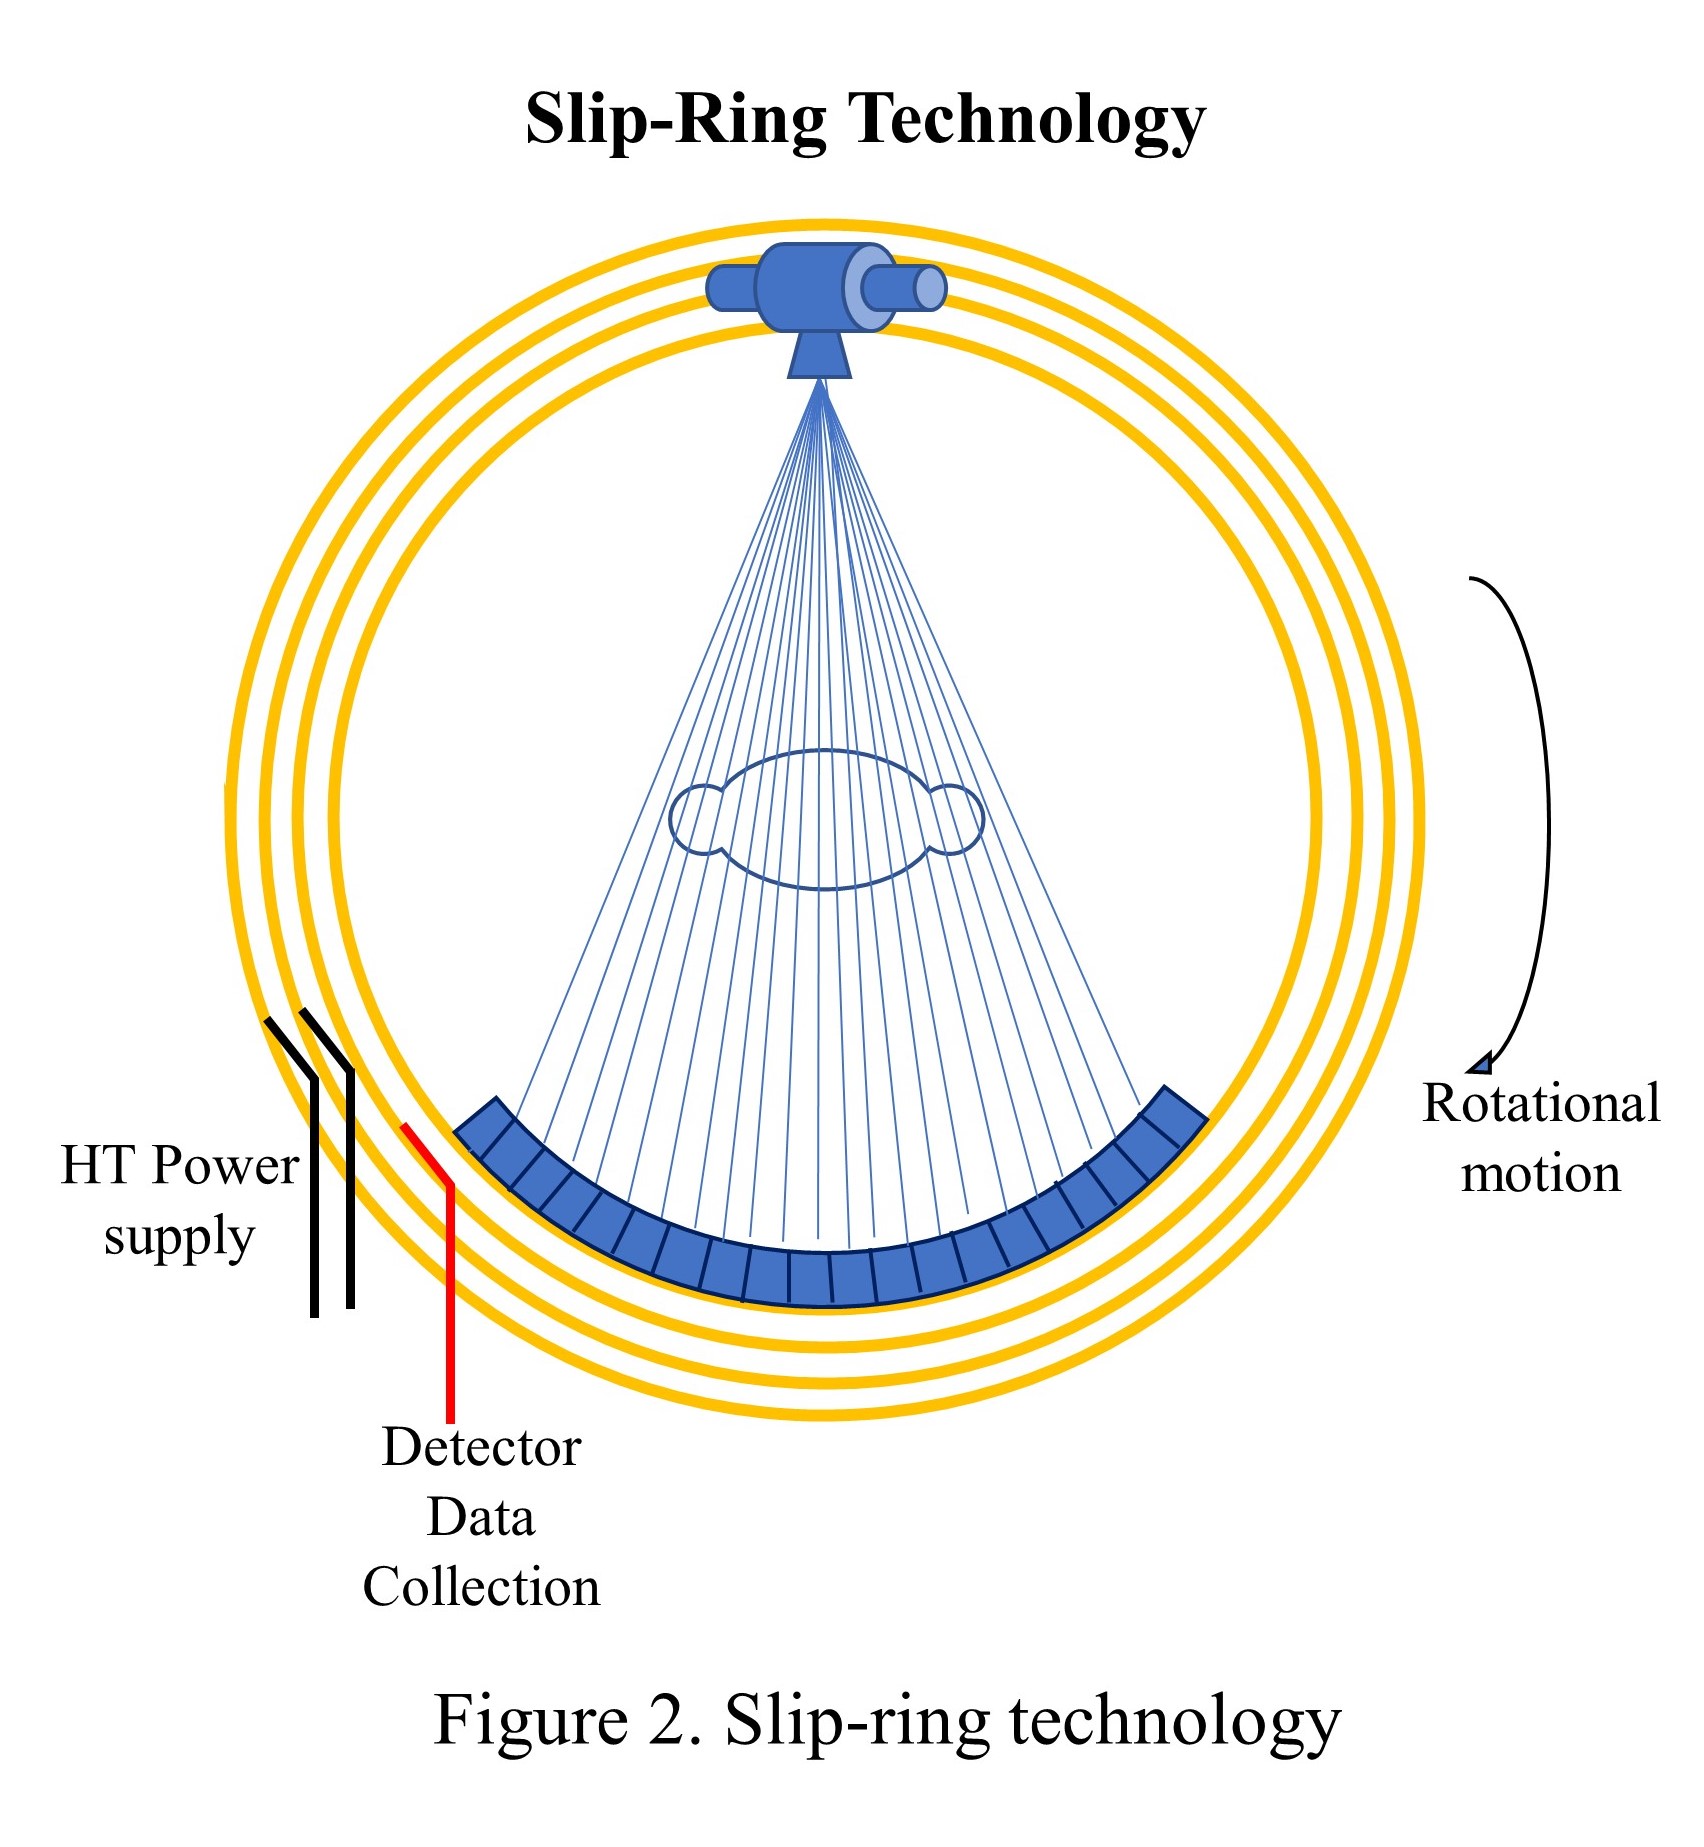 Slip-ring technology